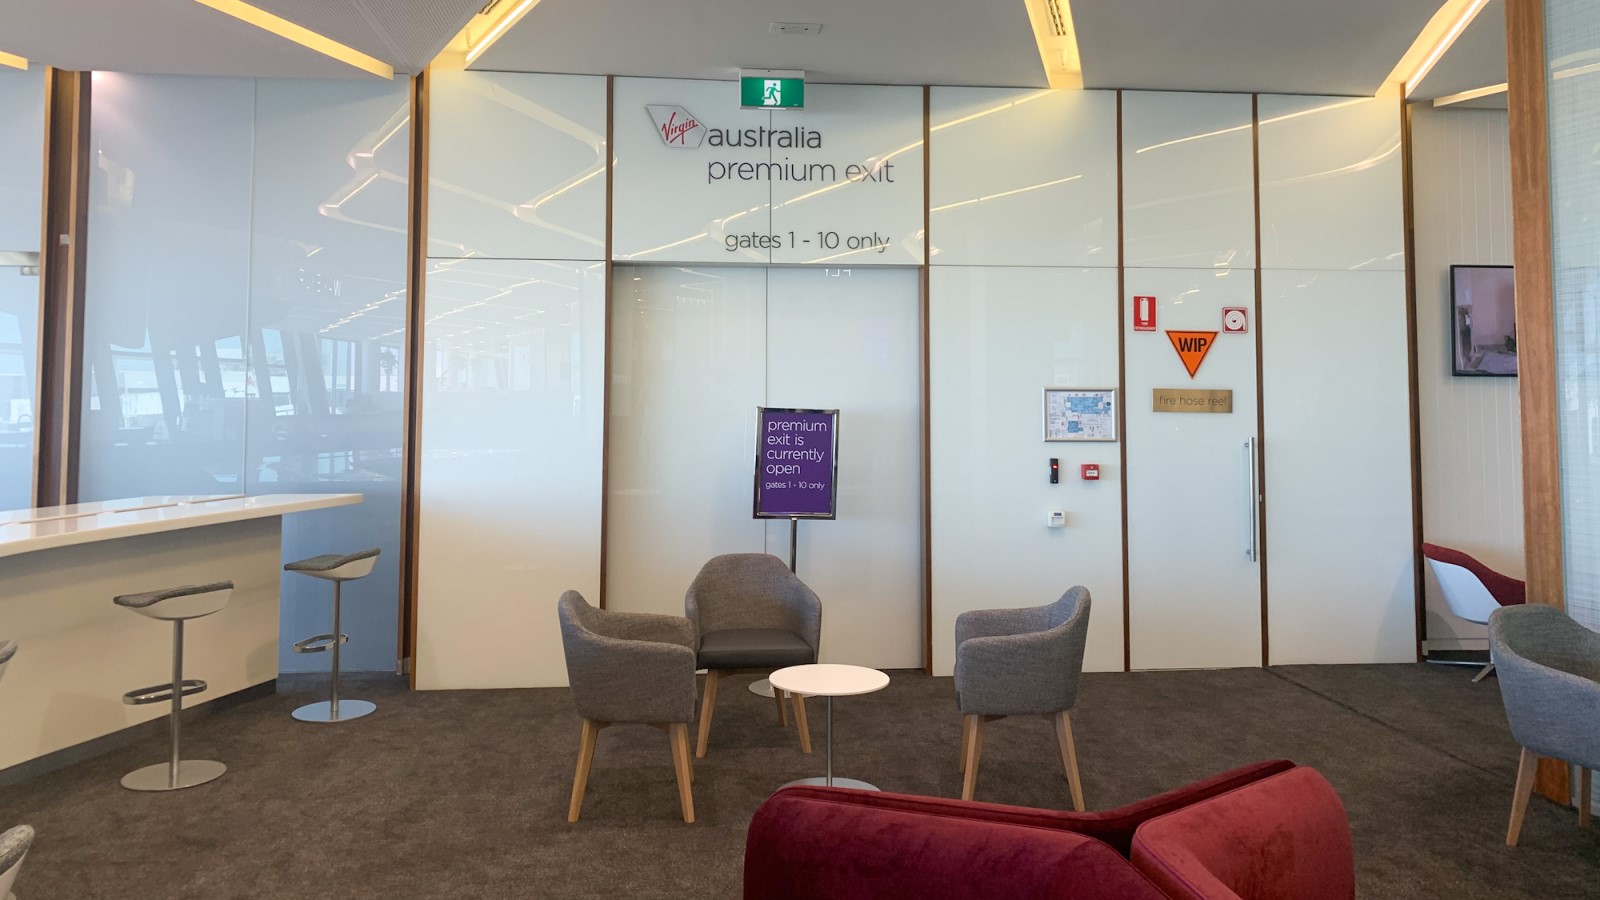 Virgin Australia Melbourne Lounge Premium Exit